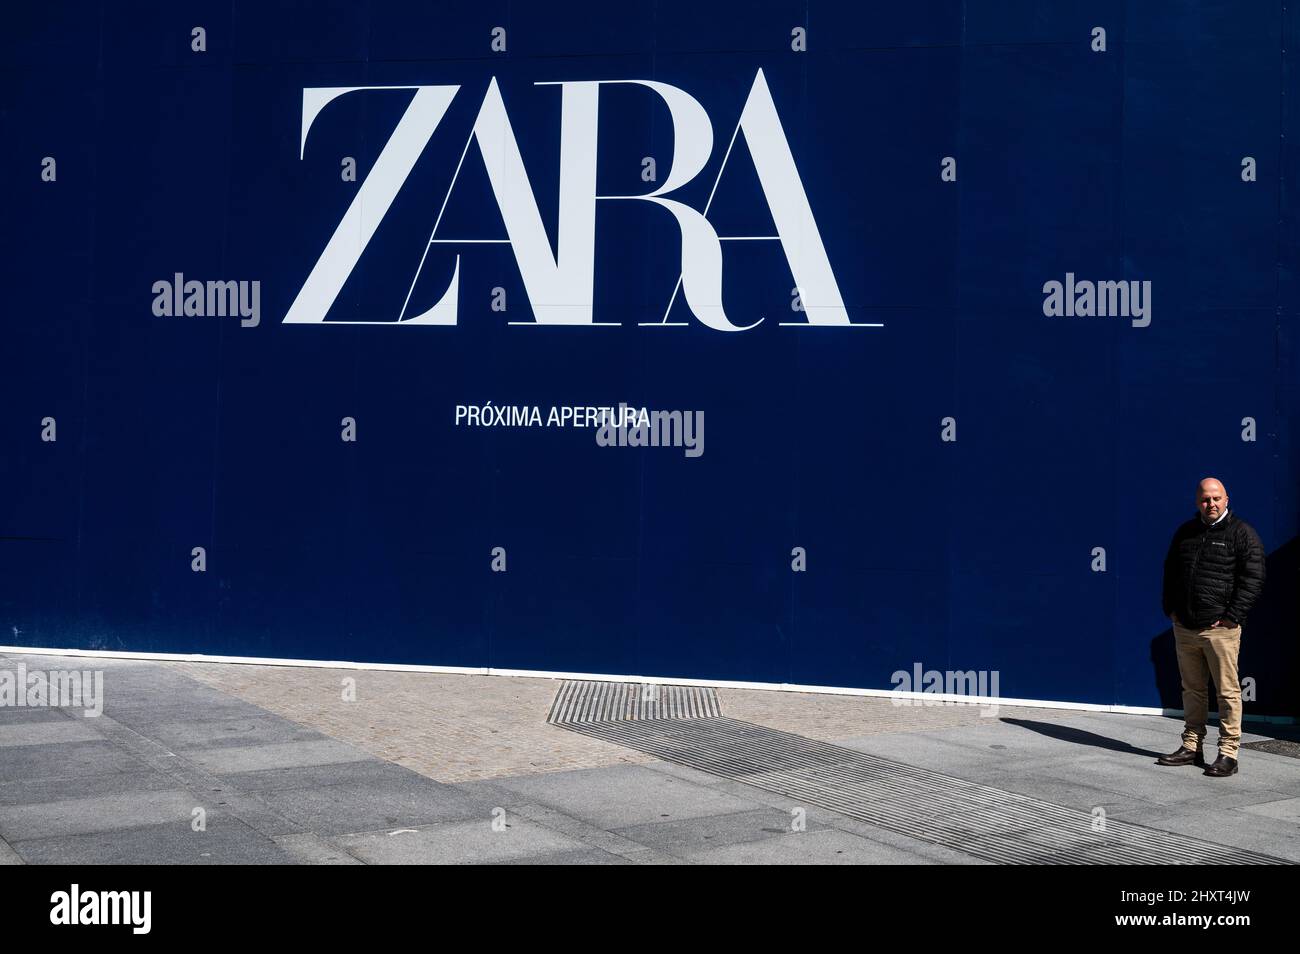 Ein Mann steht neben einer Werbung für die bevorstehende Eröffnung eines Zara-Ladens. Die Geschäfte von Zara gehören zur Inditex-Gruppe, die sich im Besitz von Amancio Ortega befindet. Stockfoto